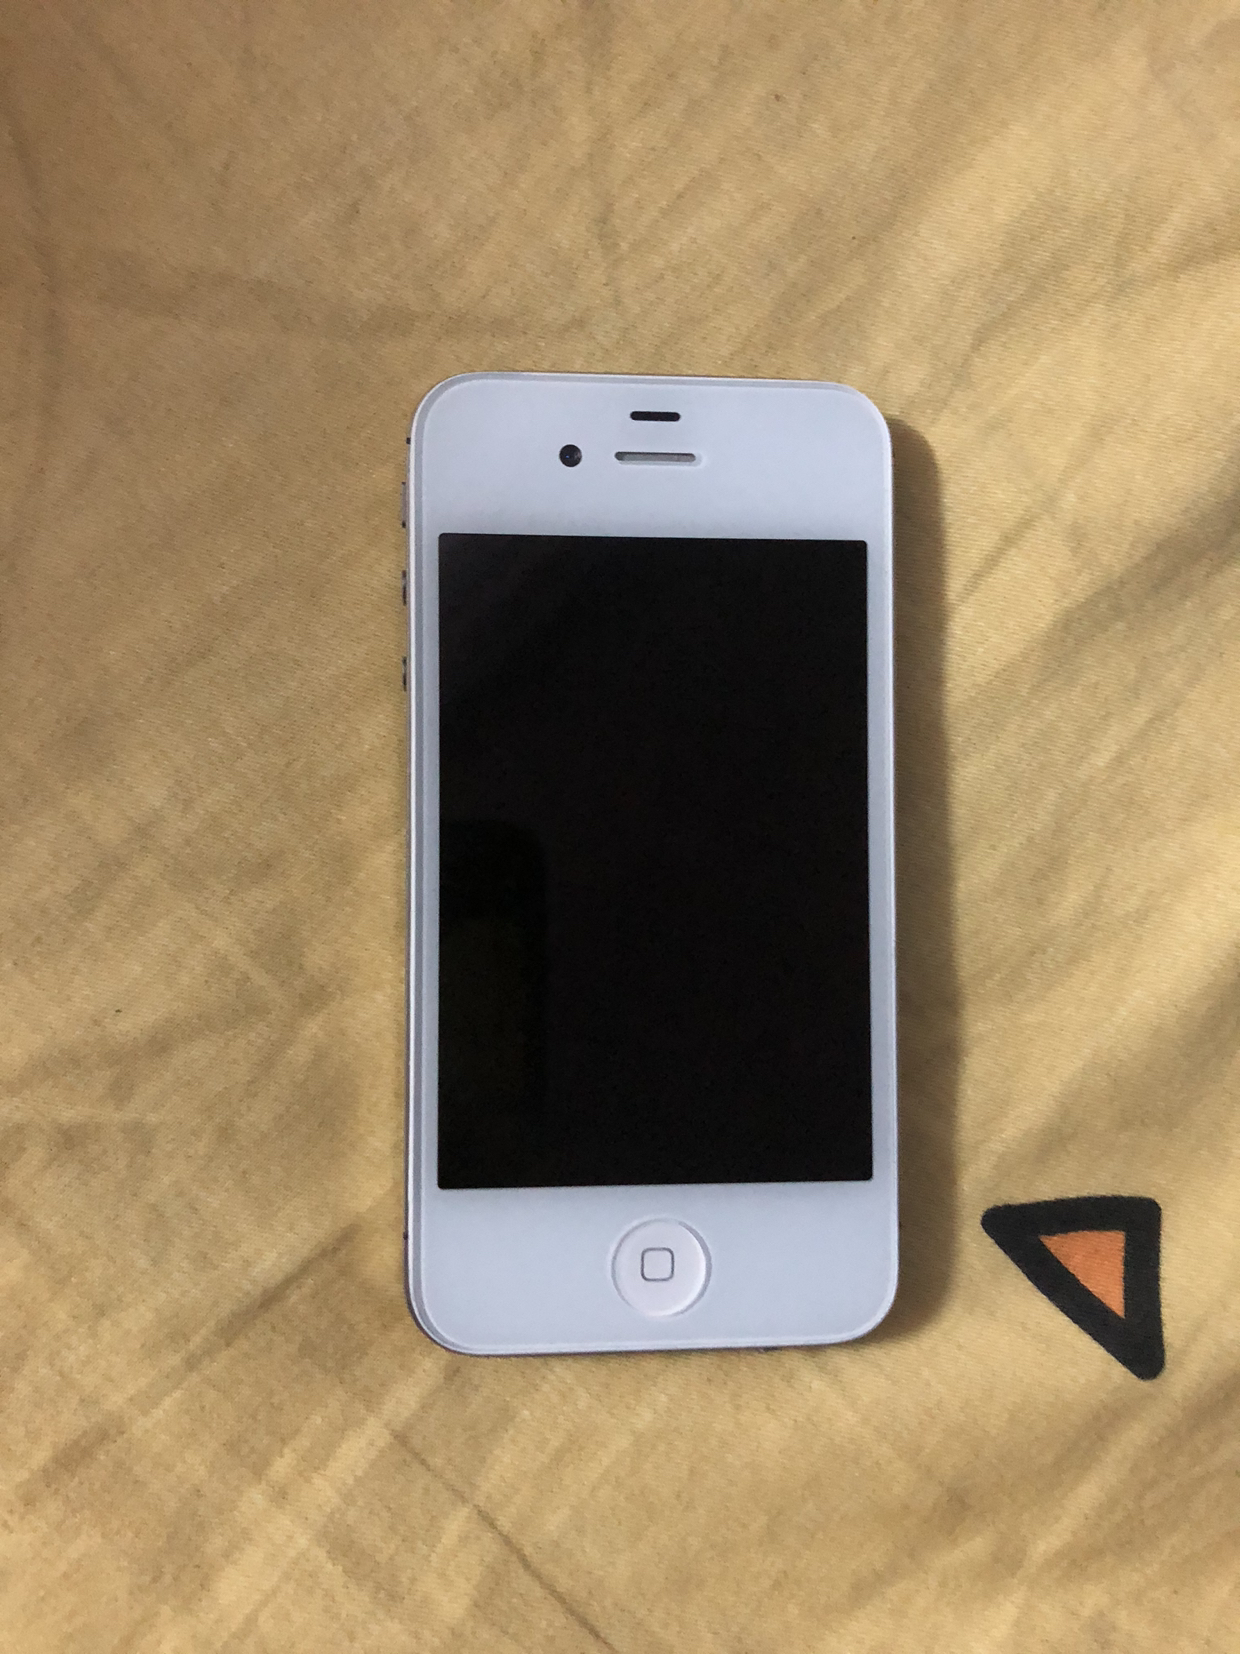 【二手9成新】苹果(apple) iphone 4s 白色 16g 移动2g联通3g 只能用